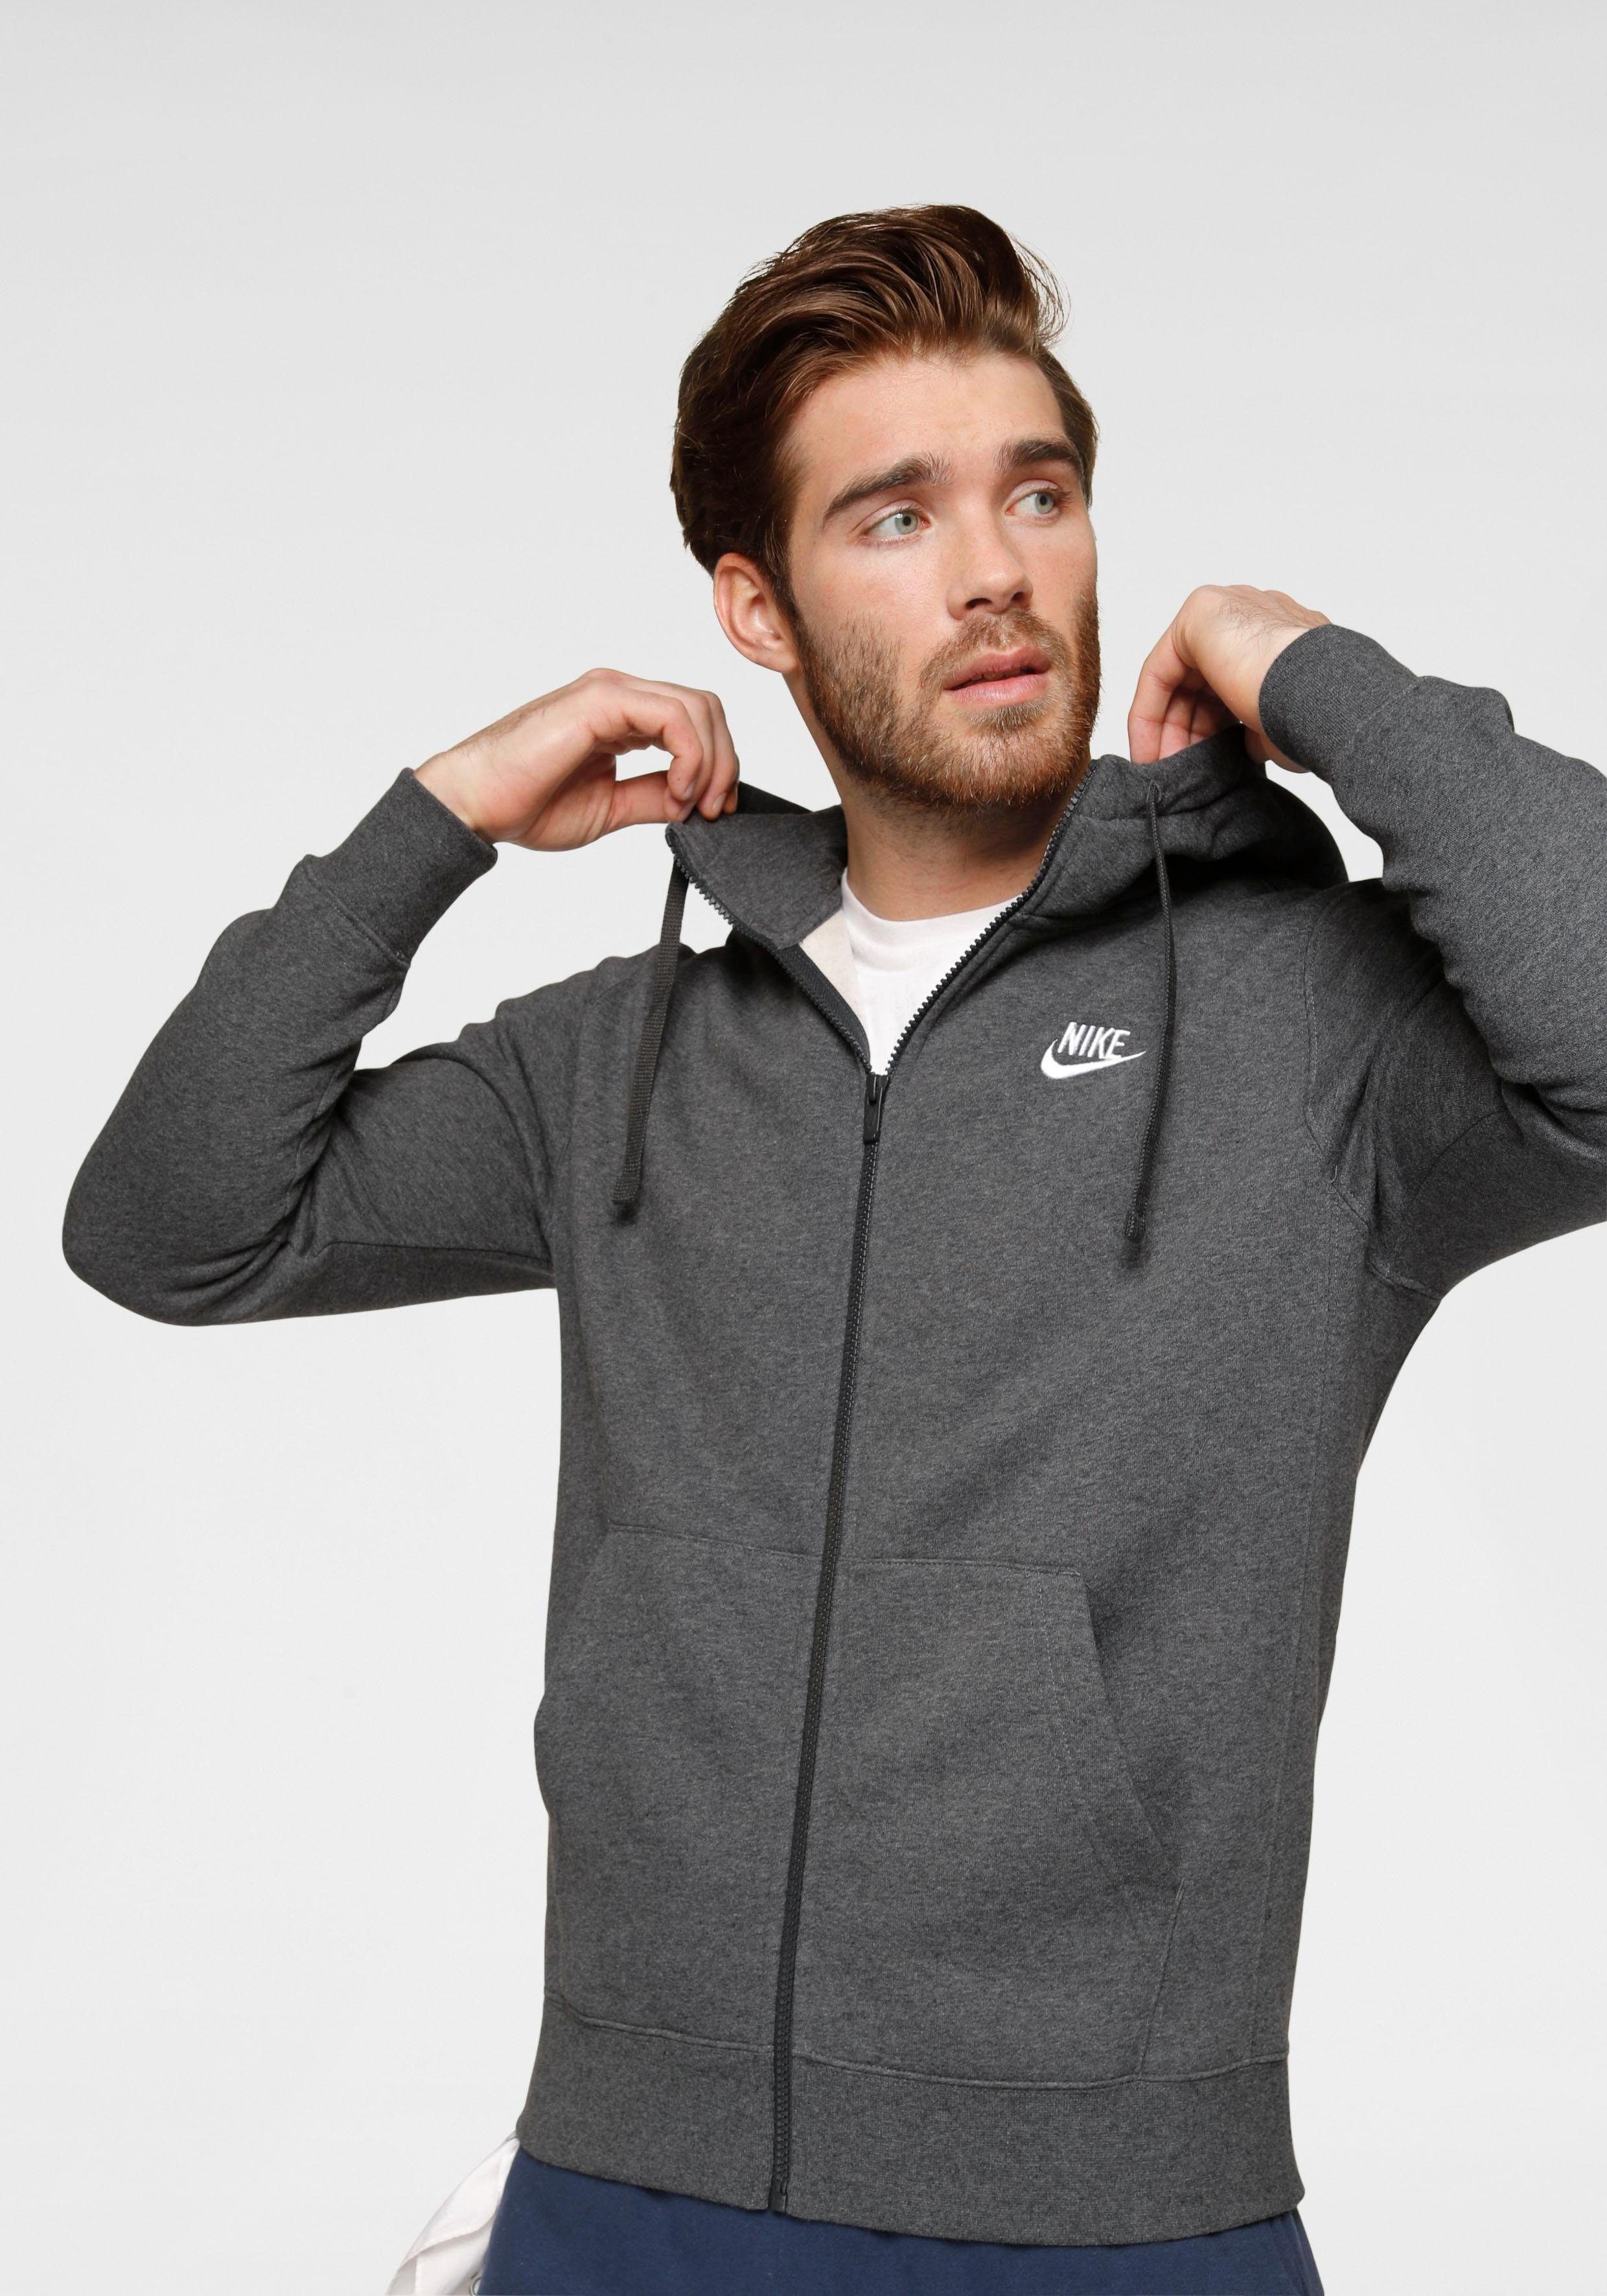 Nike Sportswear anthrazit Hoodie Men's Sweatjacke Club Fleece Full-Zip